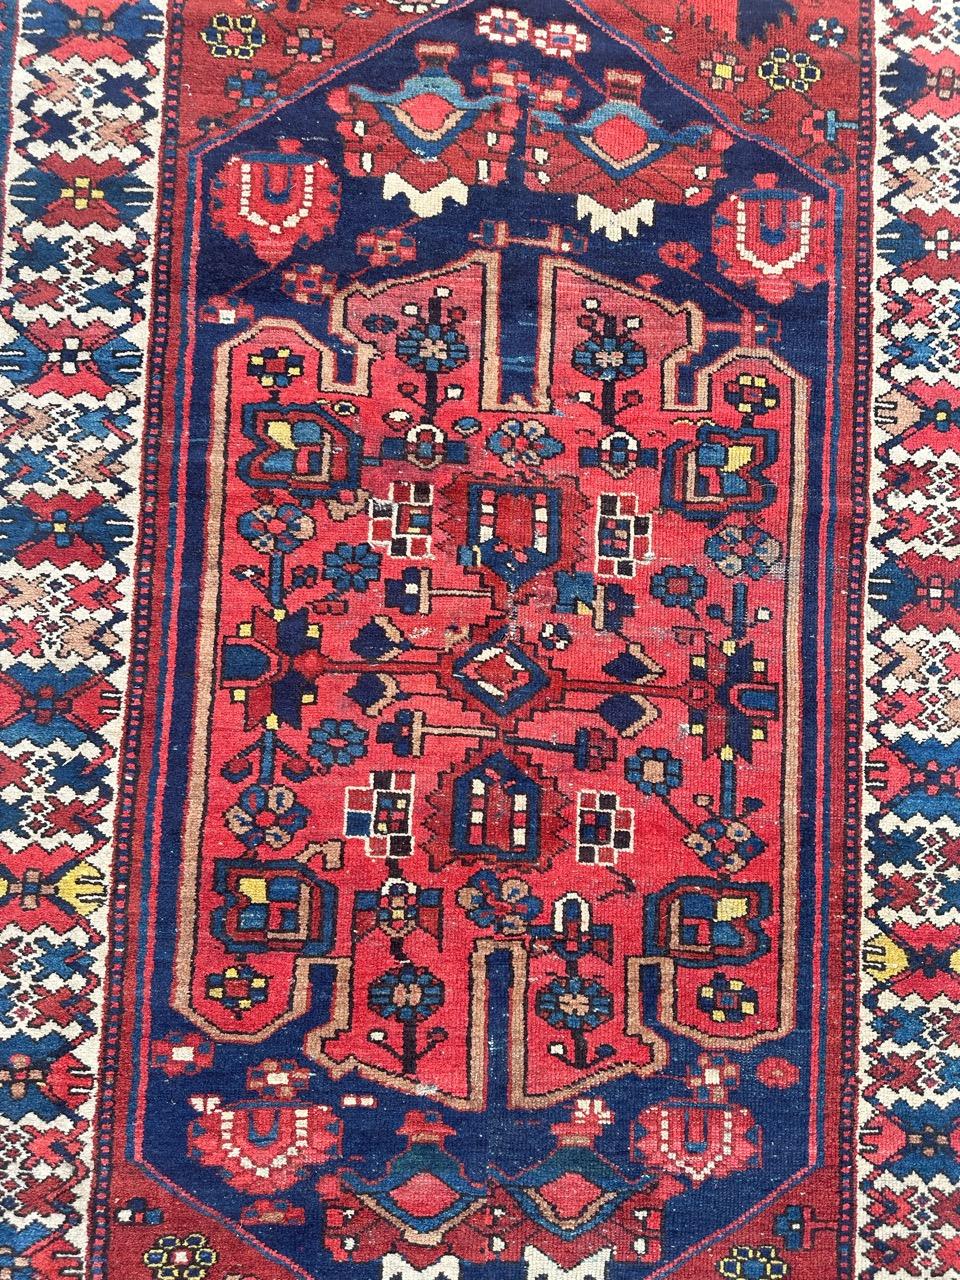 Schöner antiker Hamadan-Teppich mit schönem Tribal-Muster und schönen natürlichen Farben mit Rot, Marineblau, Gelb, Blau, Grün und Weiß, komplett handgeknüpft mit Wolle auf Baumwollbasis. Reduzierter Teppich aus der Mitte !

✨✨✨
